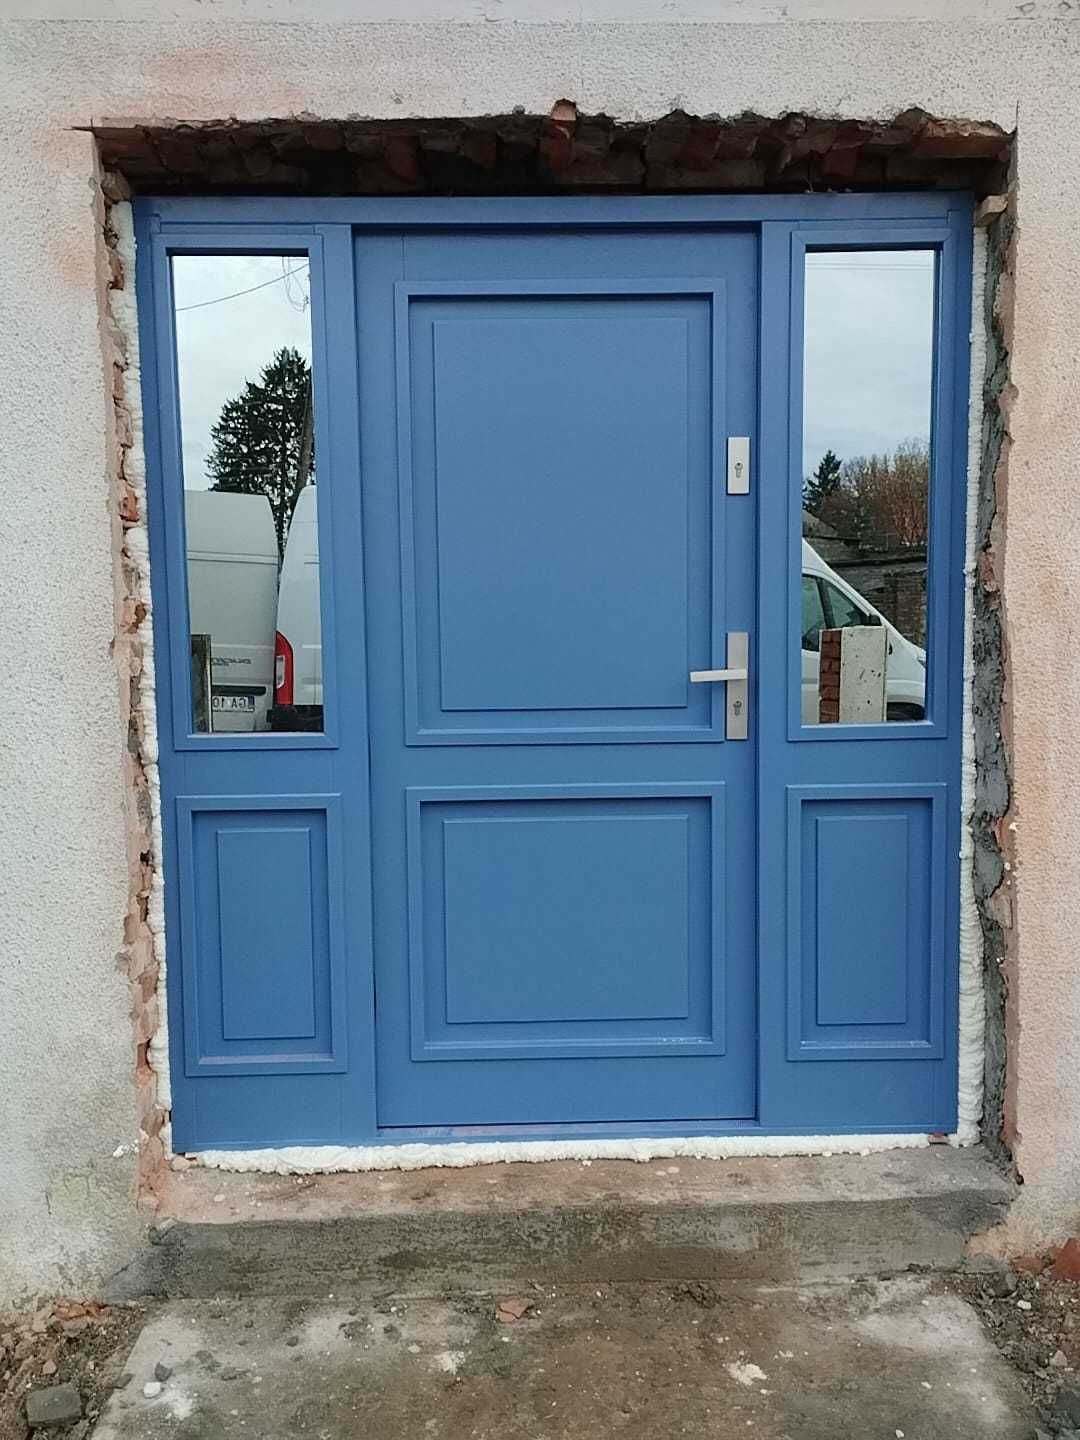 Drzwi wejściowe zewnętrzne drewniane dębowe dostawa GRATIS